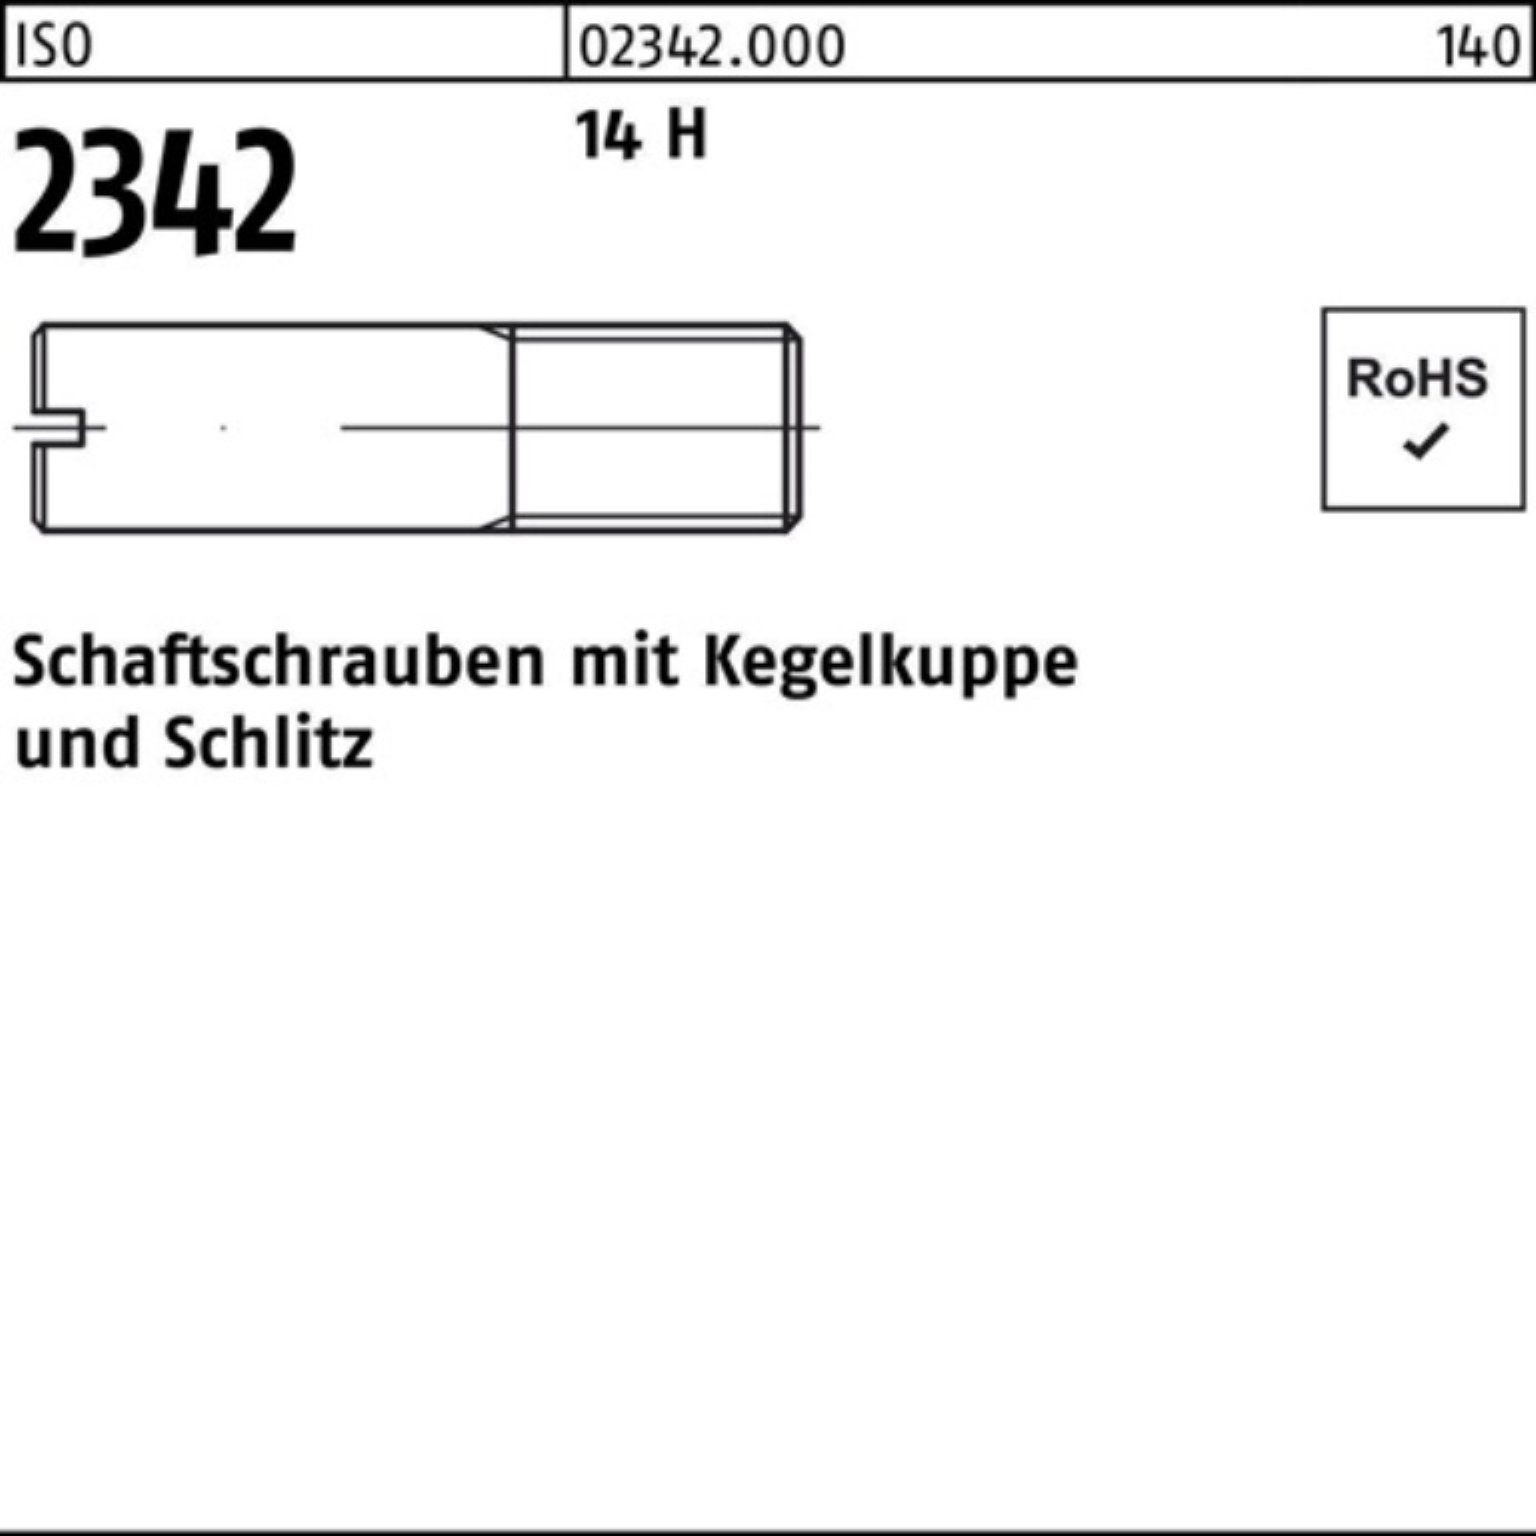 Reyher Schraube 100er Pack Schaftschraube ISO 2342 Kegelkuppe/Schlitz M6x 18 14 H 100